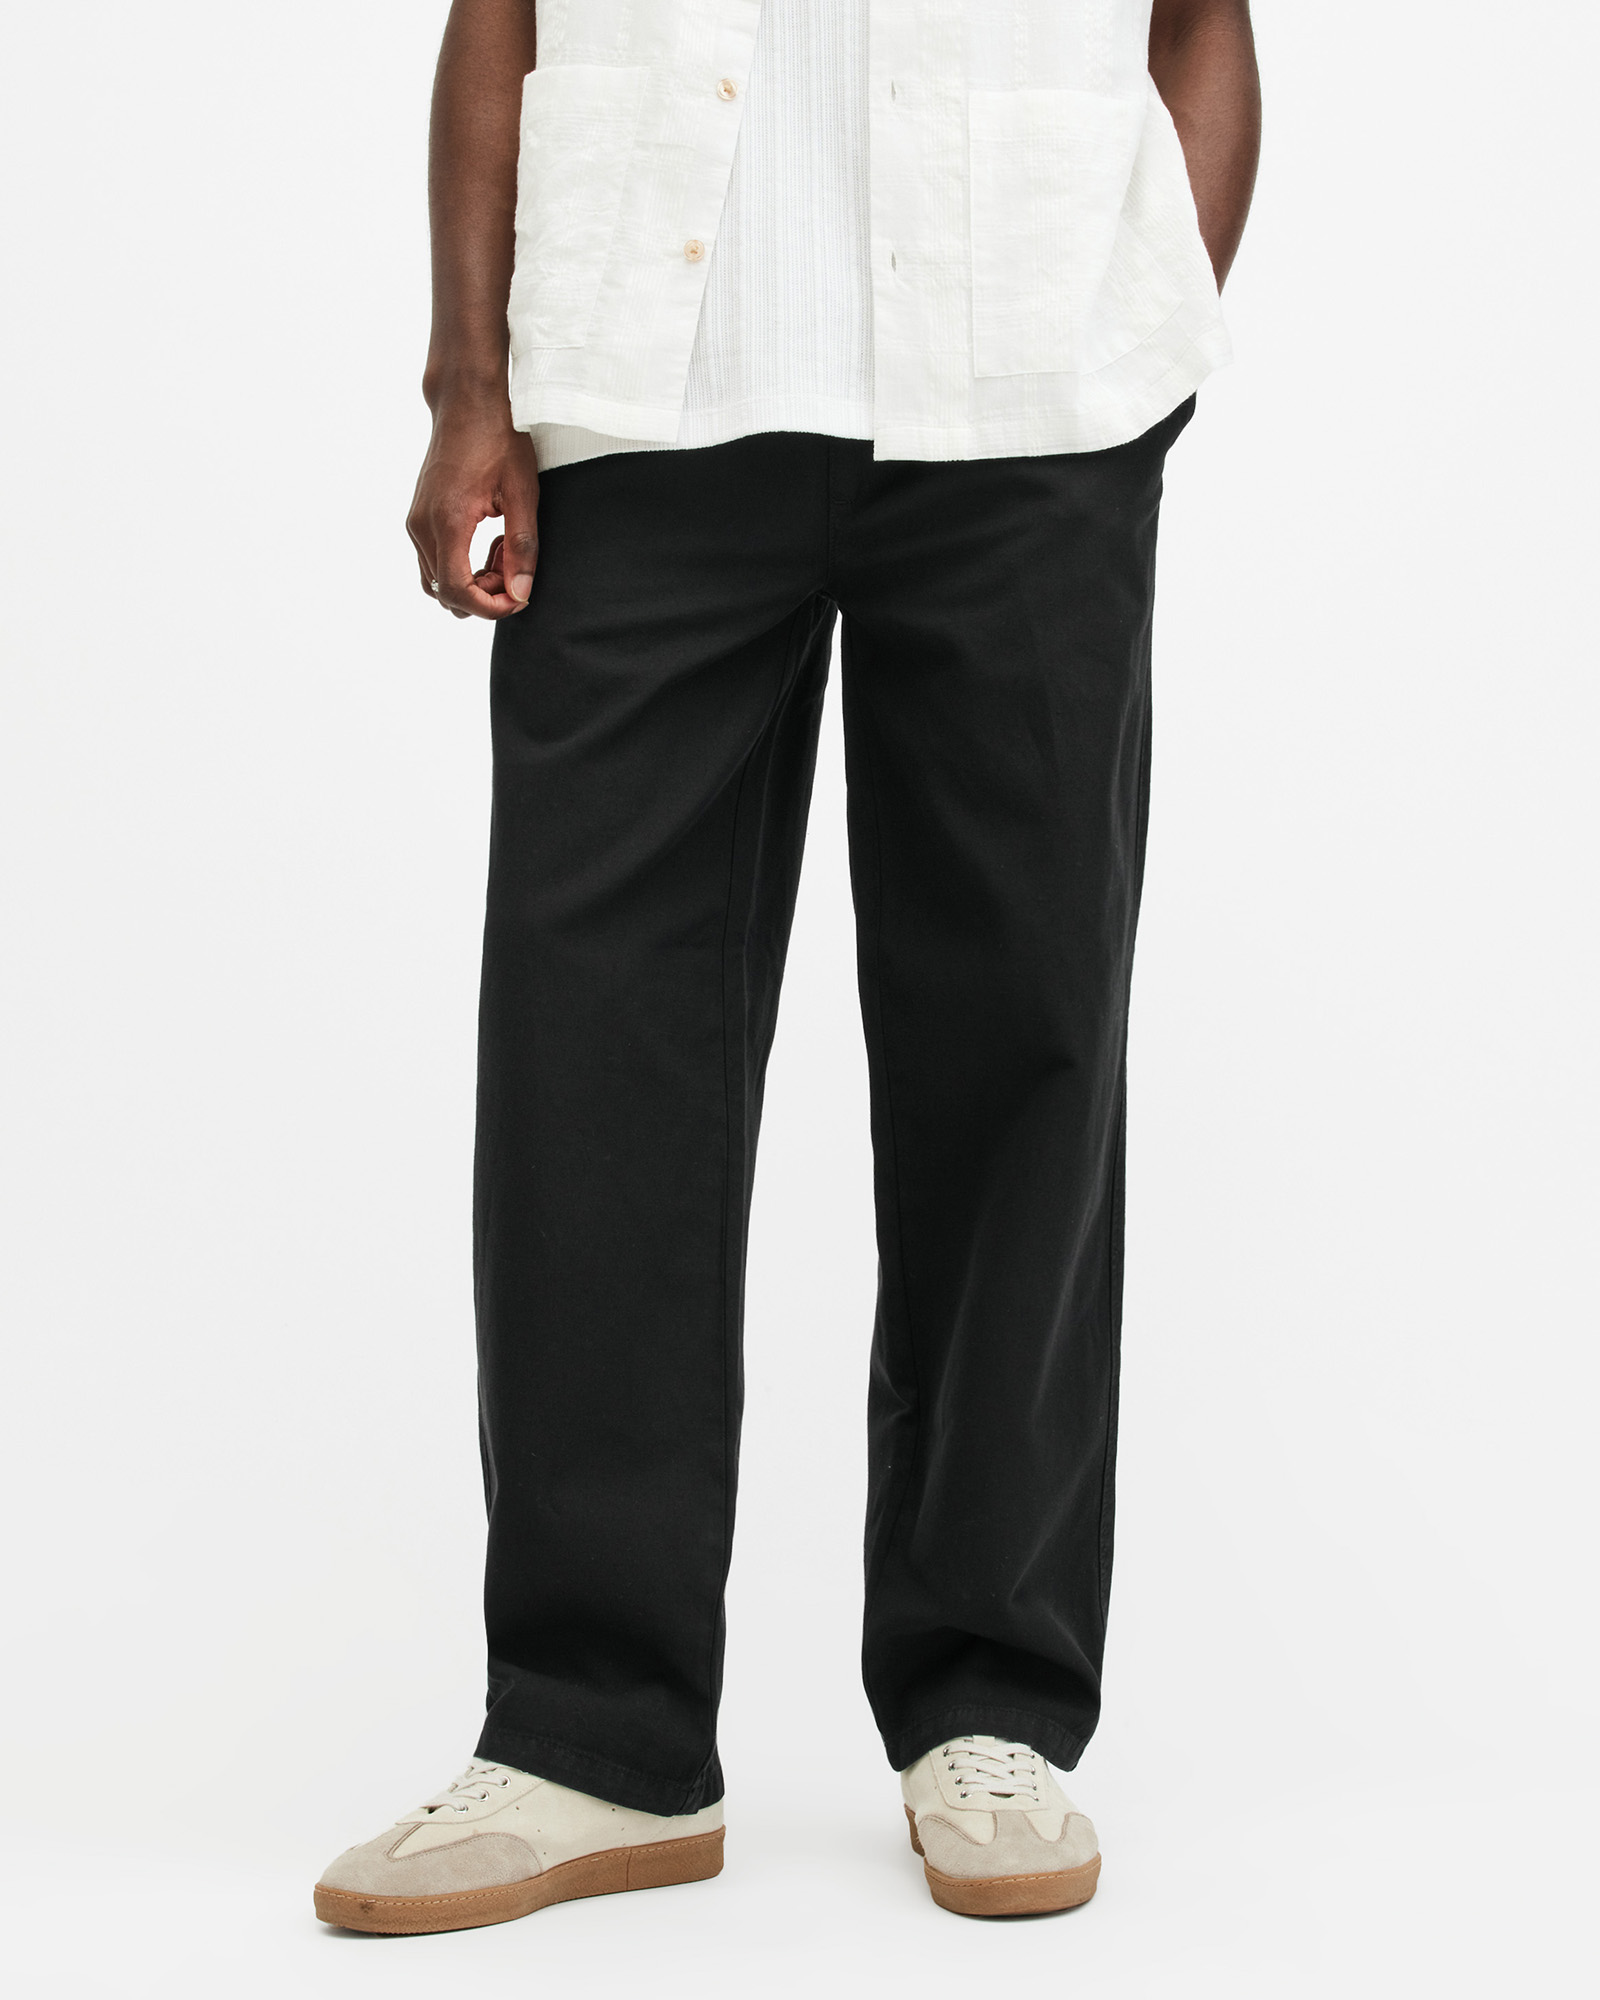 AllSaints Hanbury Linen Blend Relaxed Fit Trousers,, Jet Black